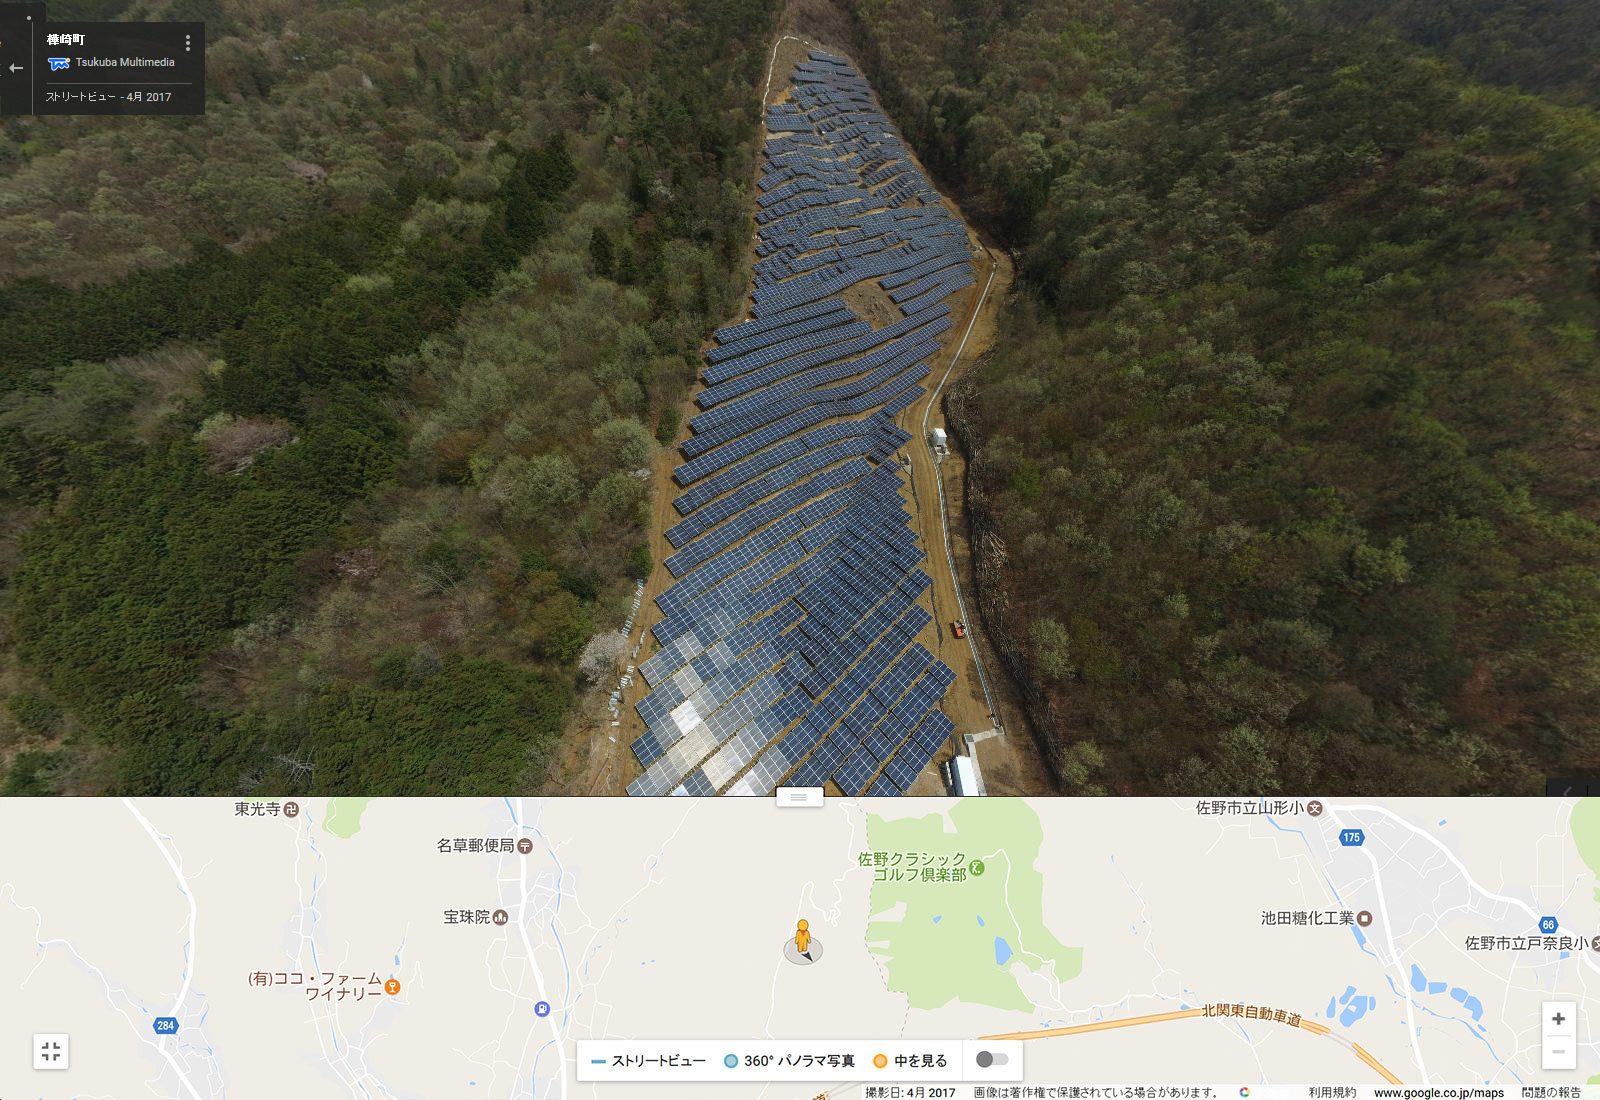 空撮によるパノラマ写真(足利市の太陽光発電所)